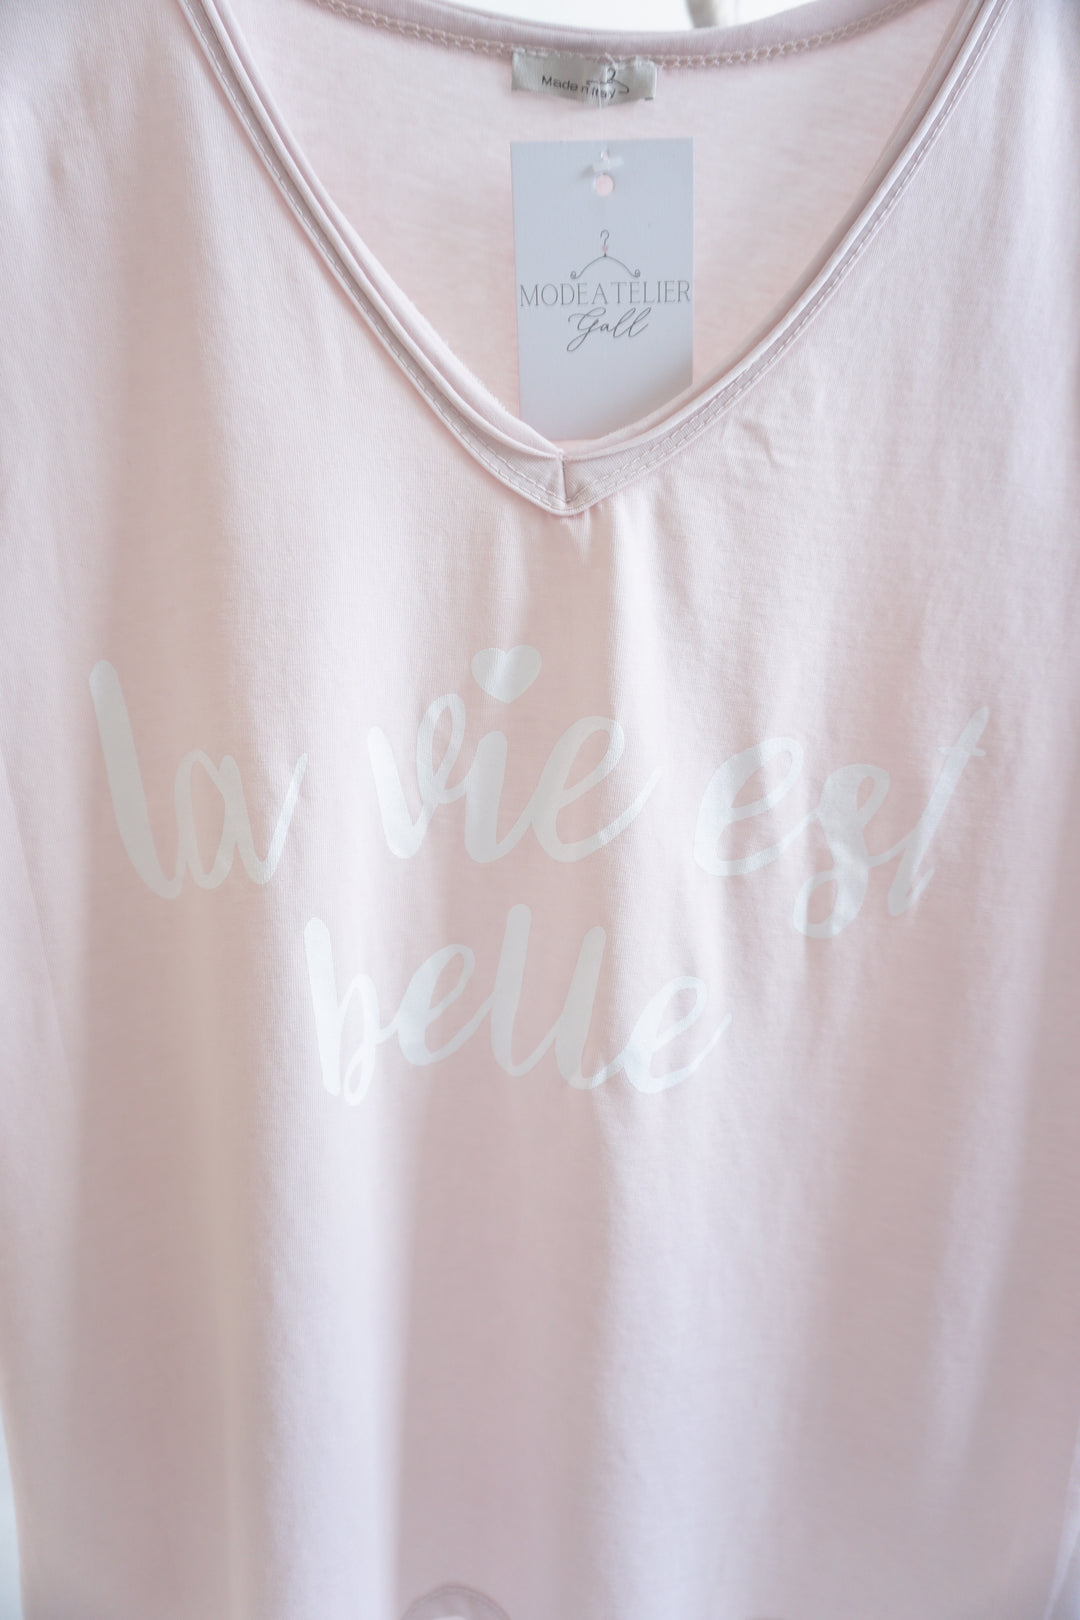 T-Shirt "la vie est belle" 11054 rose